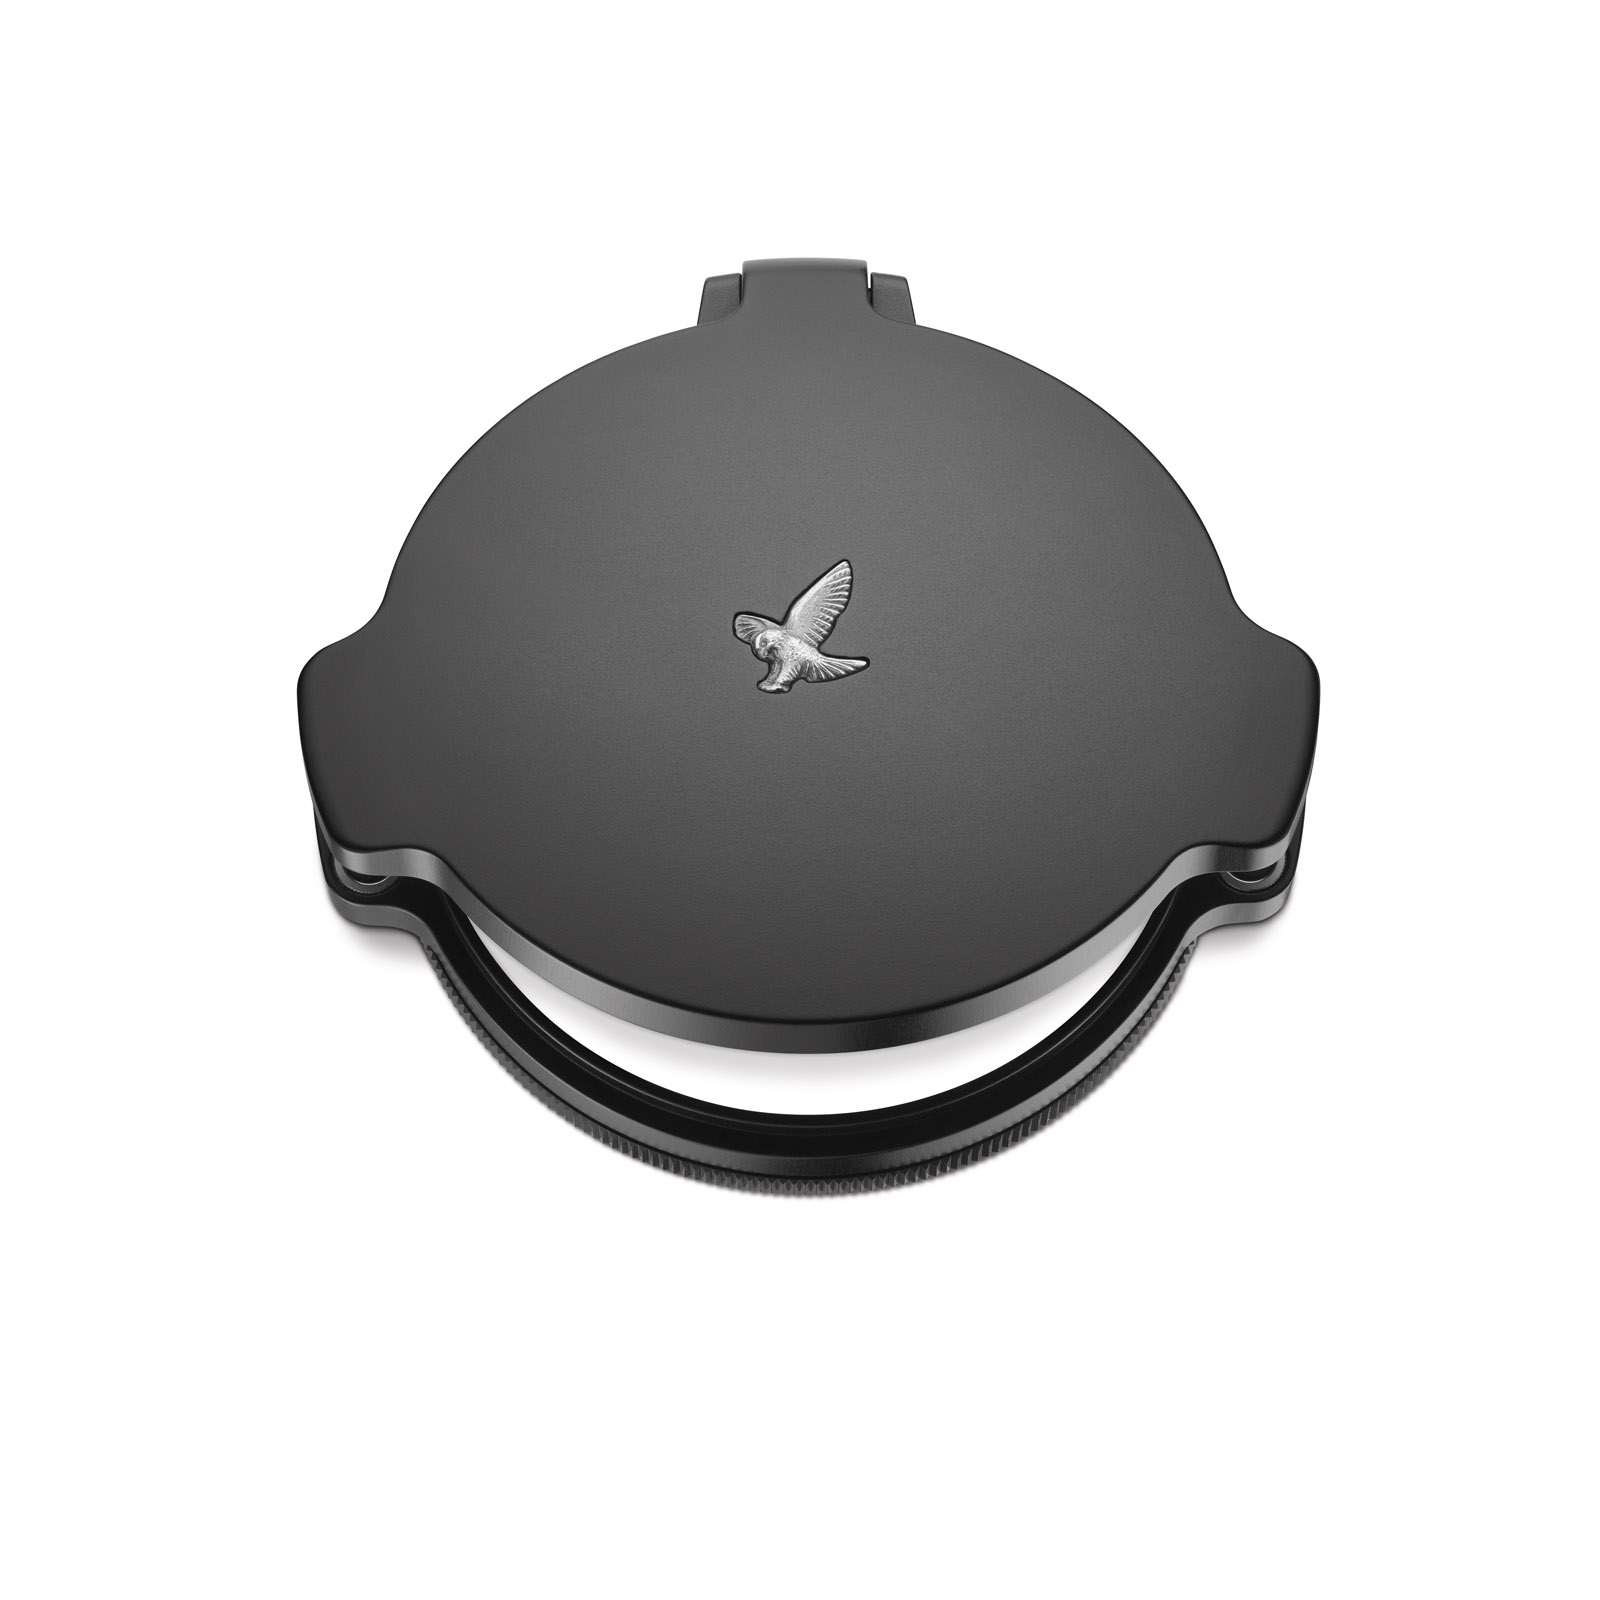 Swarovski Zielfernrohr Schutzdeckel Schutz der Objektivlinse Mit praktischem Magnetverschluss Um 360° drehbar